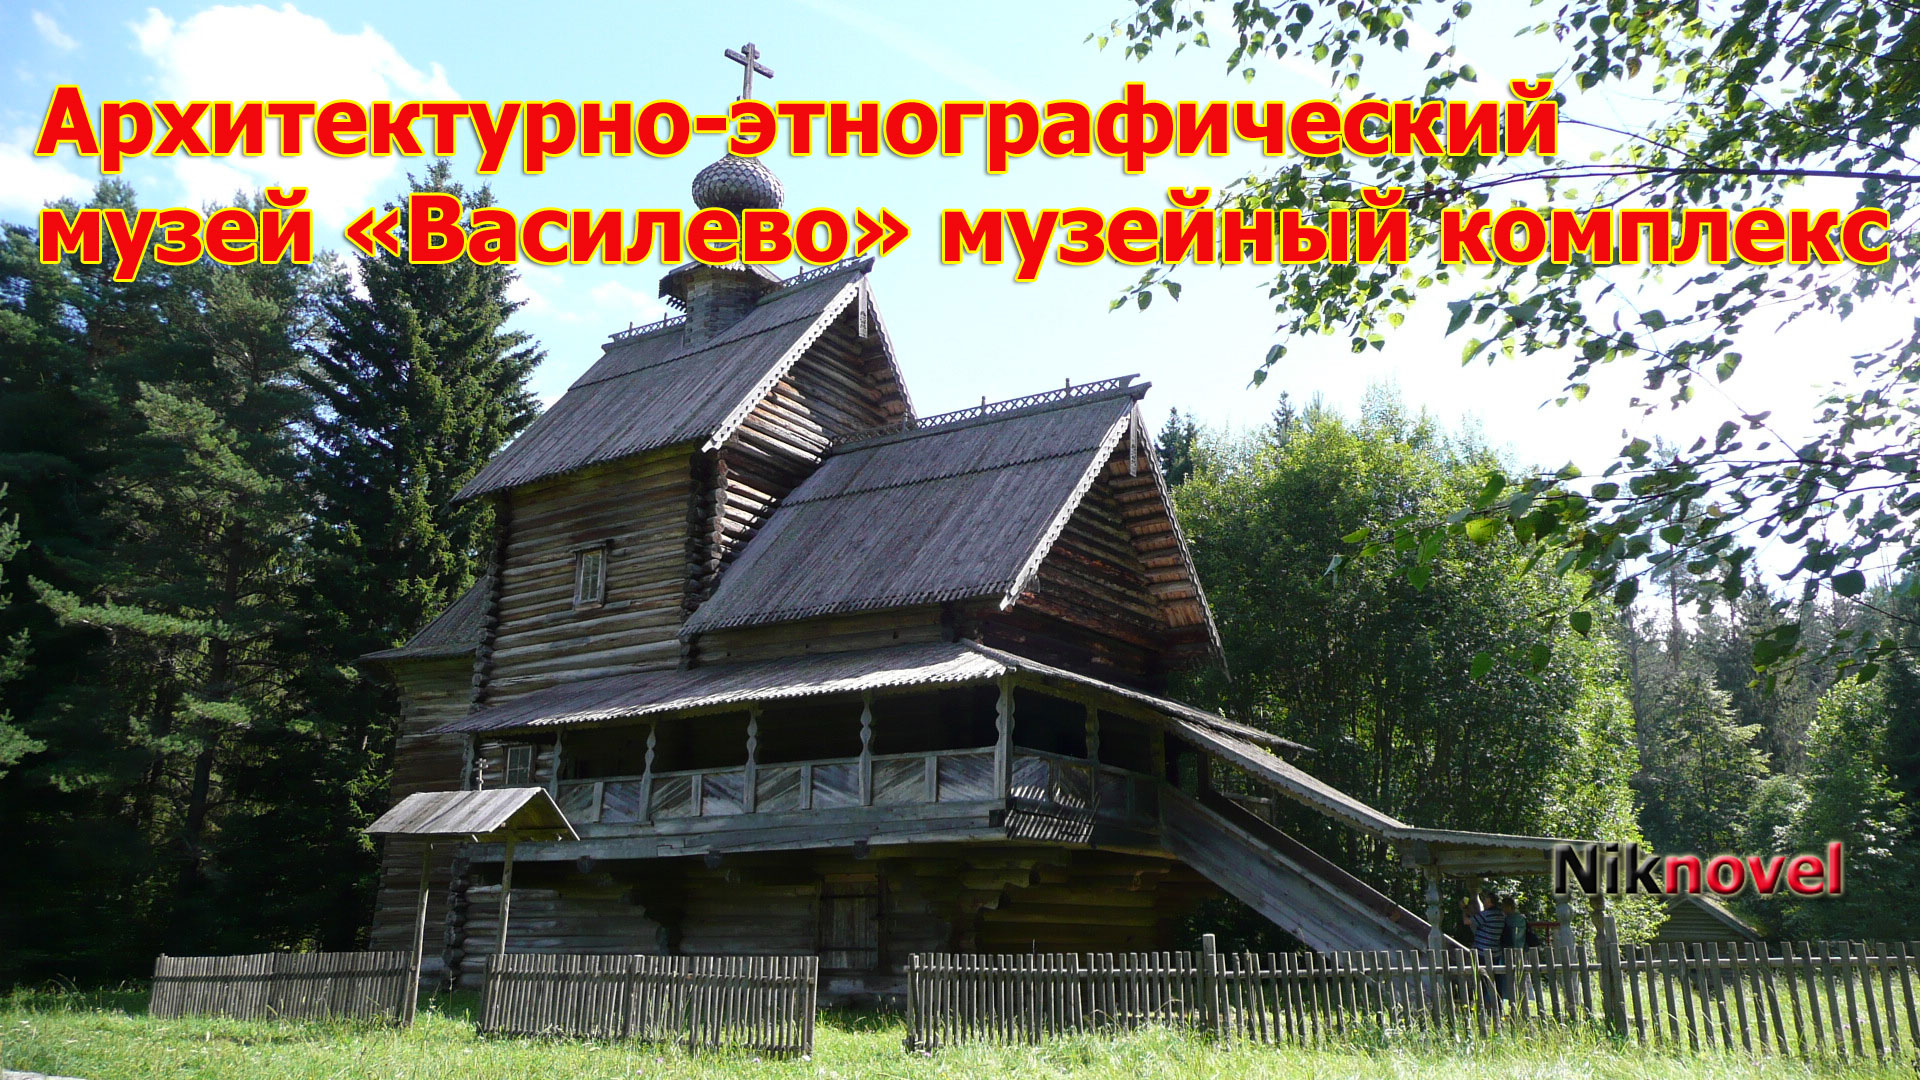 Музей древнего зодчества «Василево» деревянное зодчество под открытым небом.